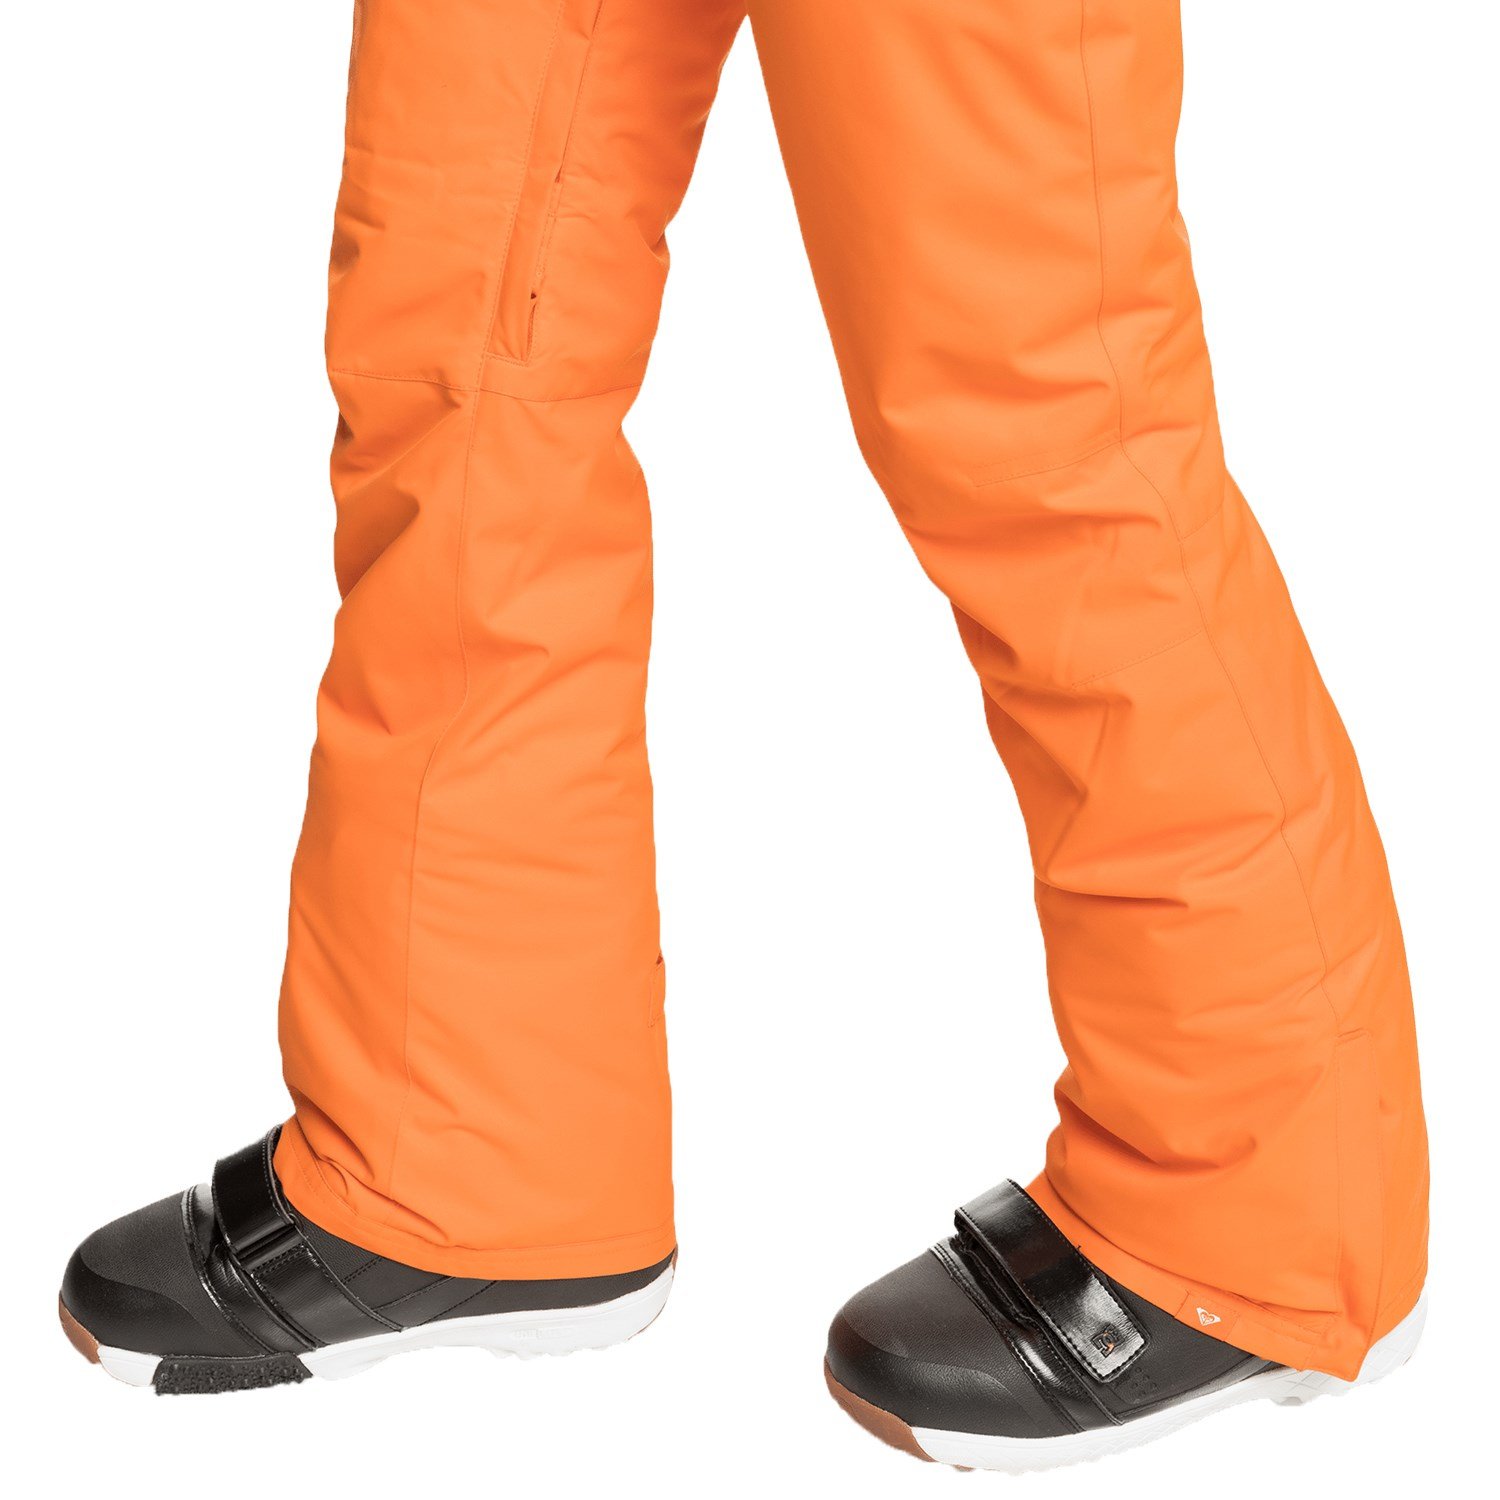 NEW Roxy Backyard Snowboard Pants Womens Snow Ski Pants Size M Celosia  Orange